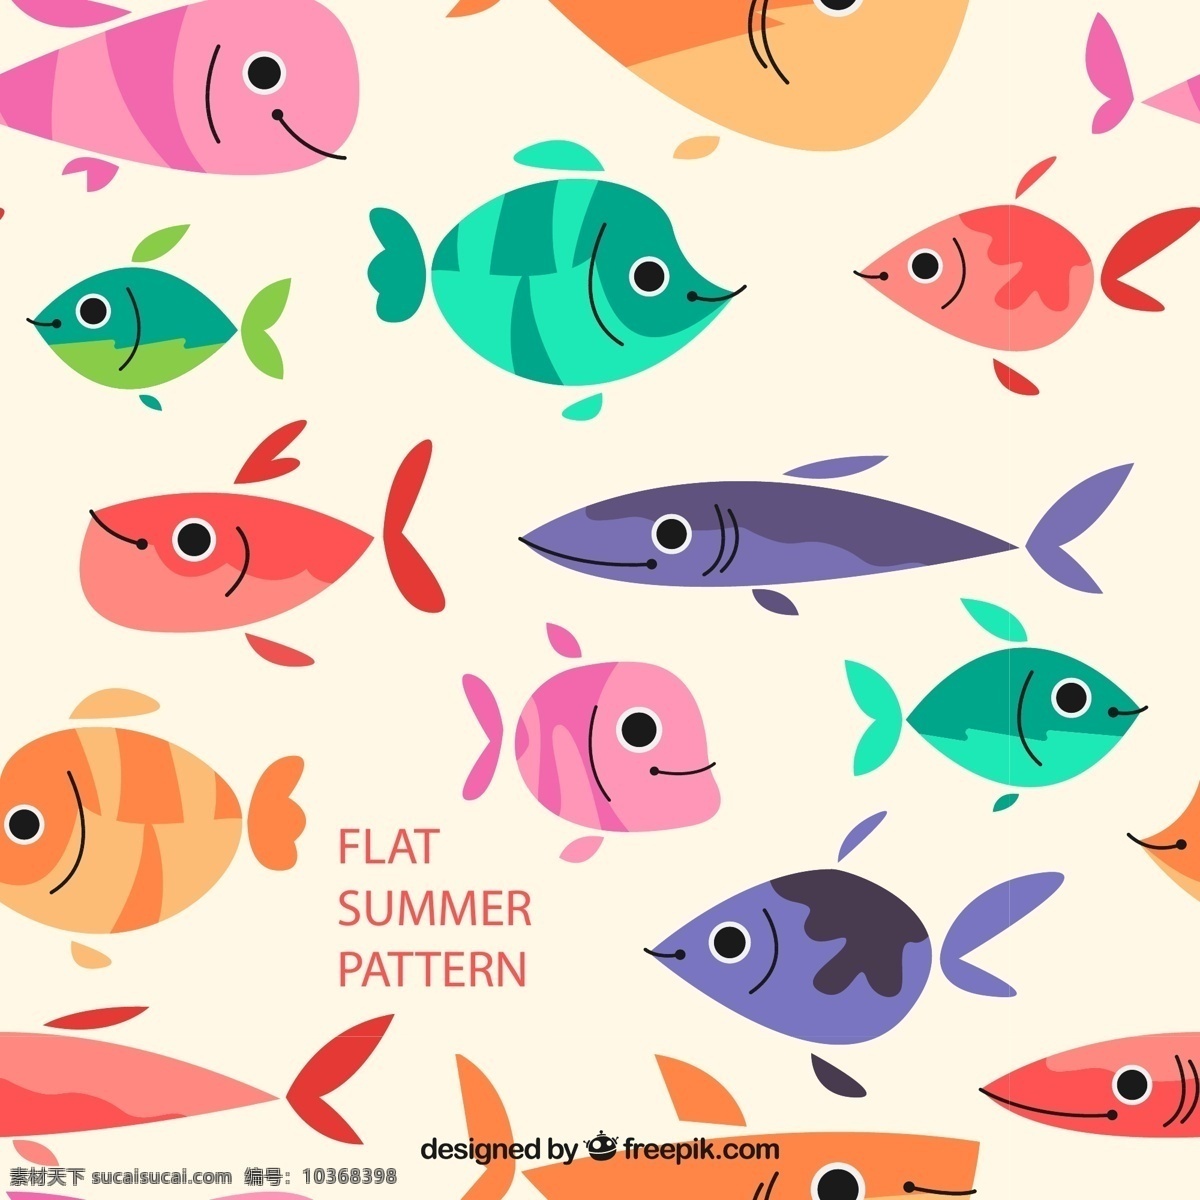 卡通 鱼类 无缝 背景图片 夏季 扁平化 无缝背景 矢量图 格式 矢量 高清图片